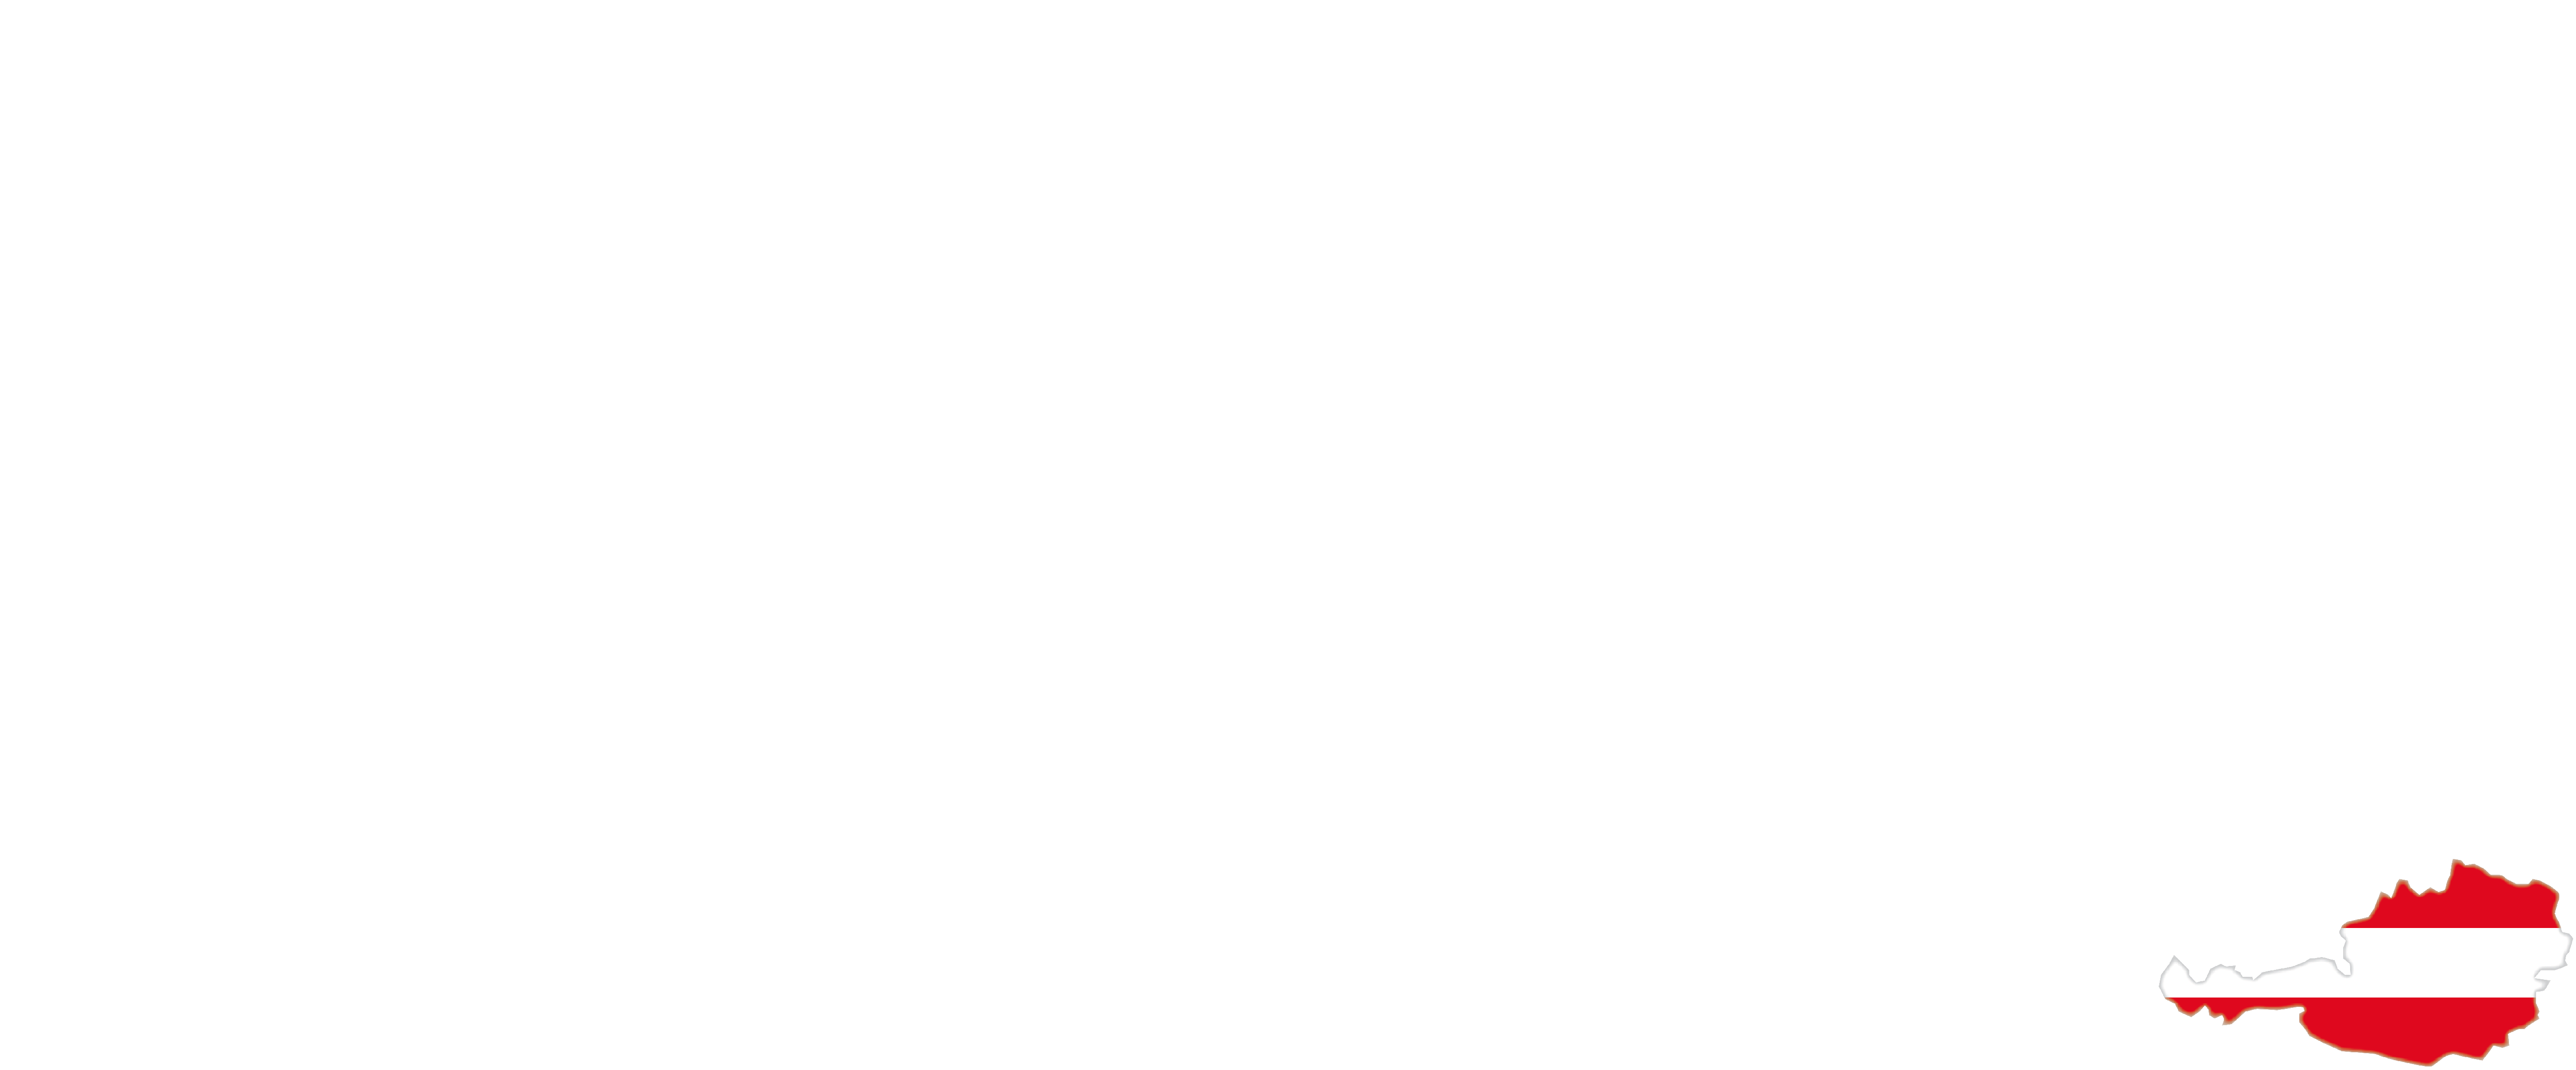 logo mbk